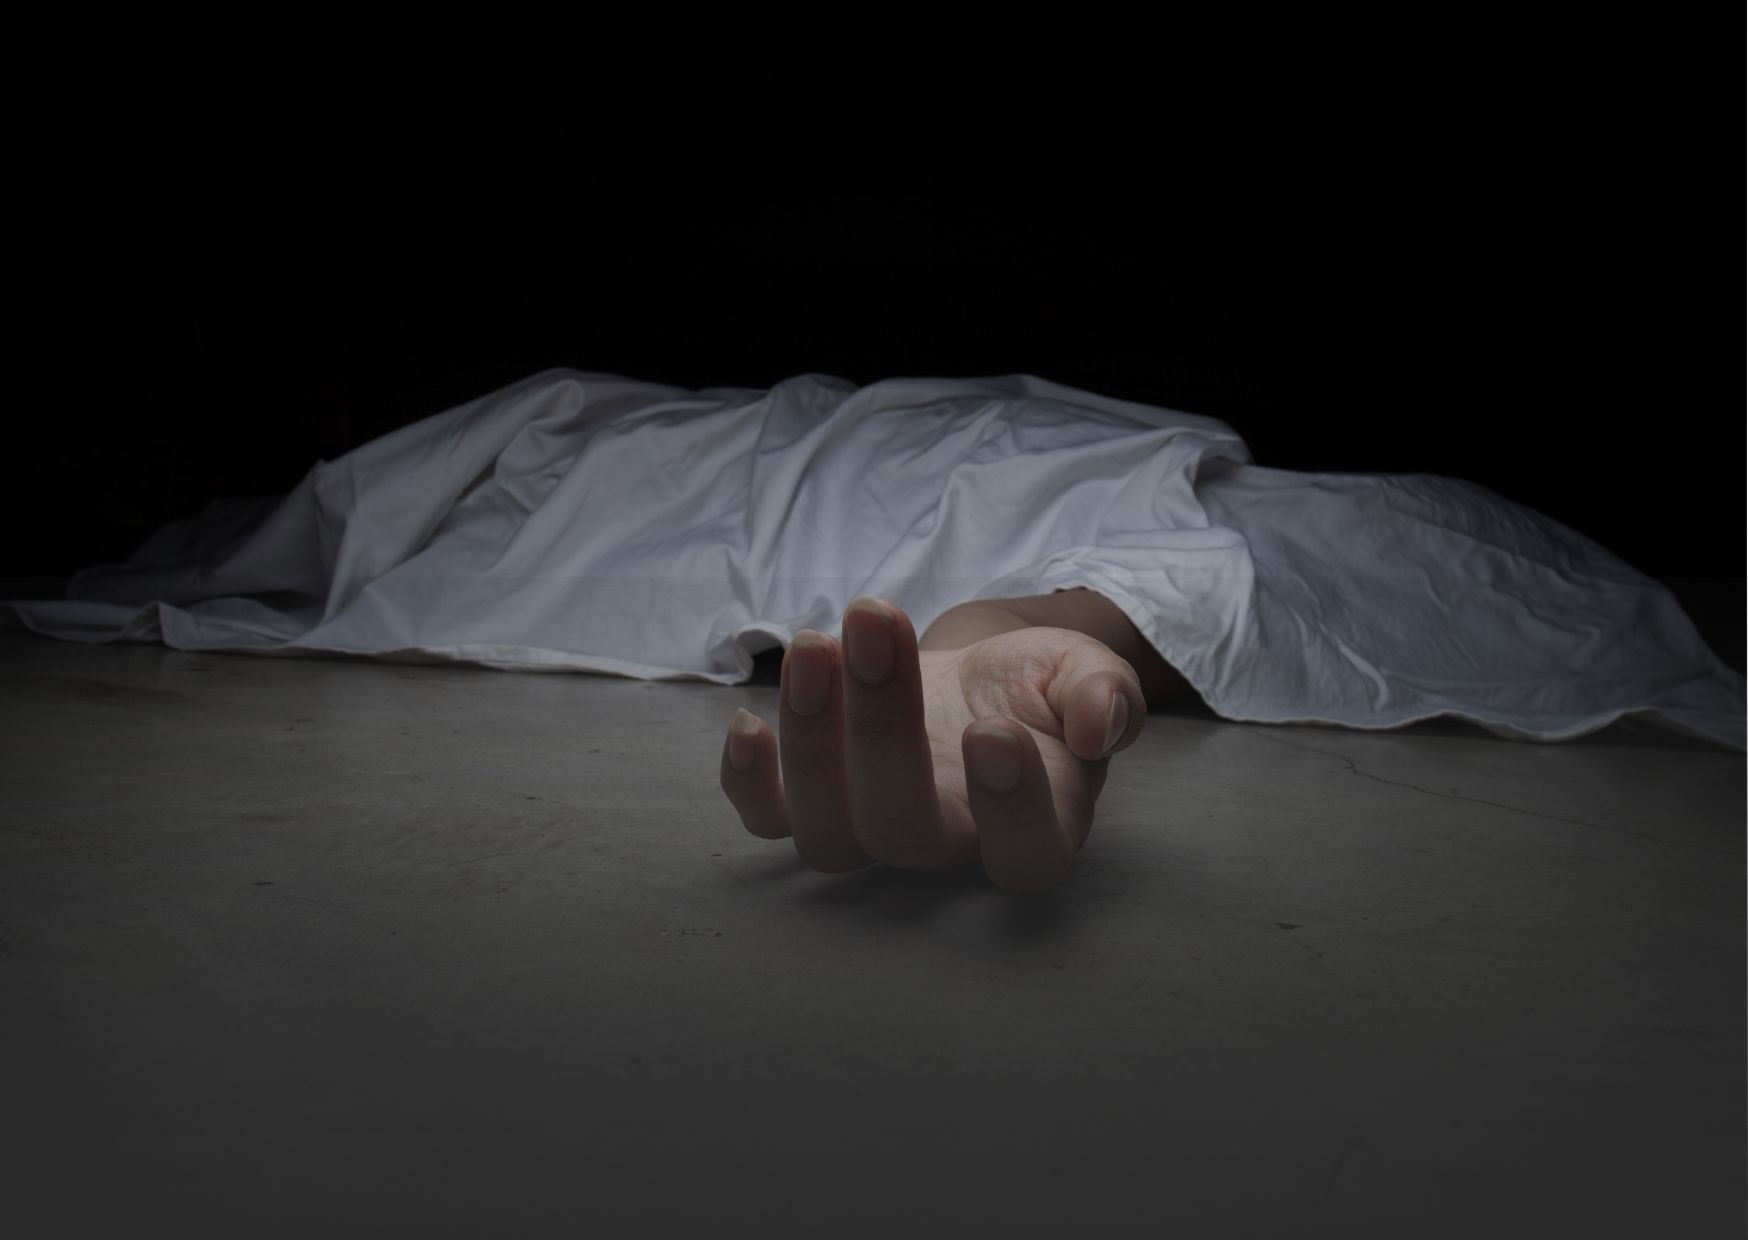 Mahasiswa Pembunuh Perempuan Hamil Asal Purworejo Akhirnya Divonis Mati